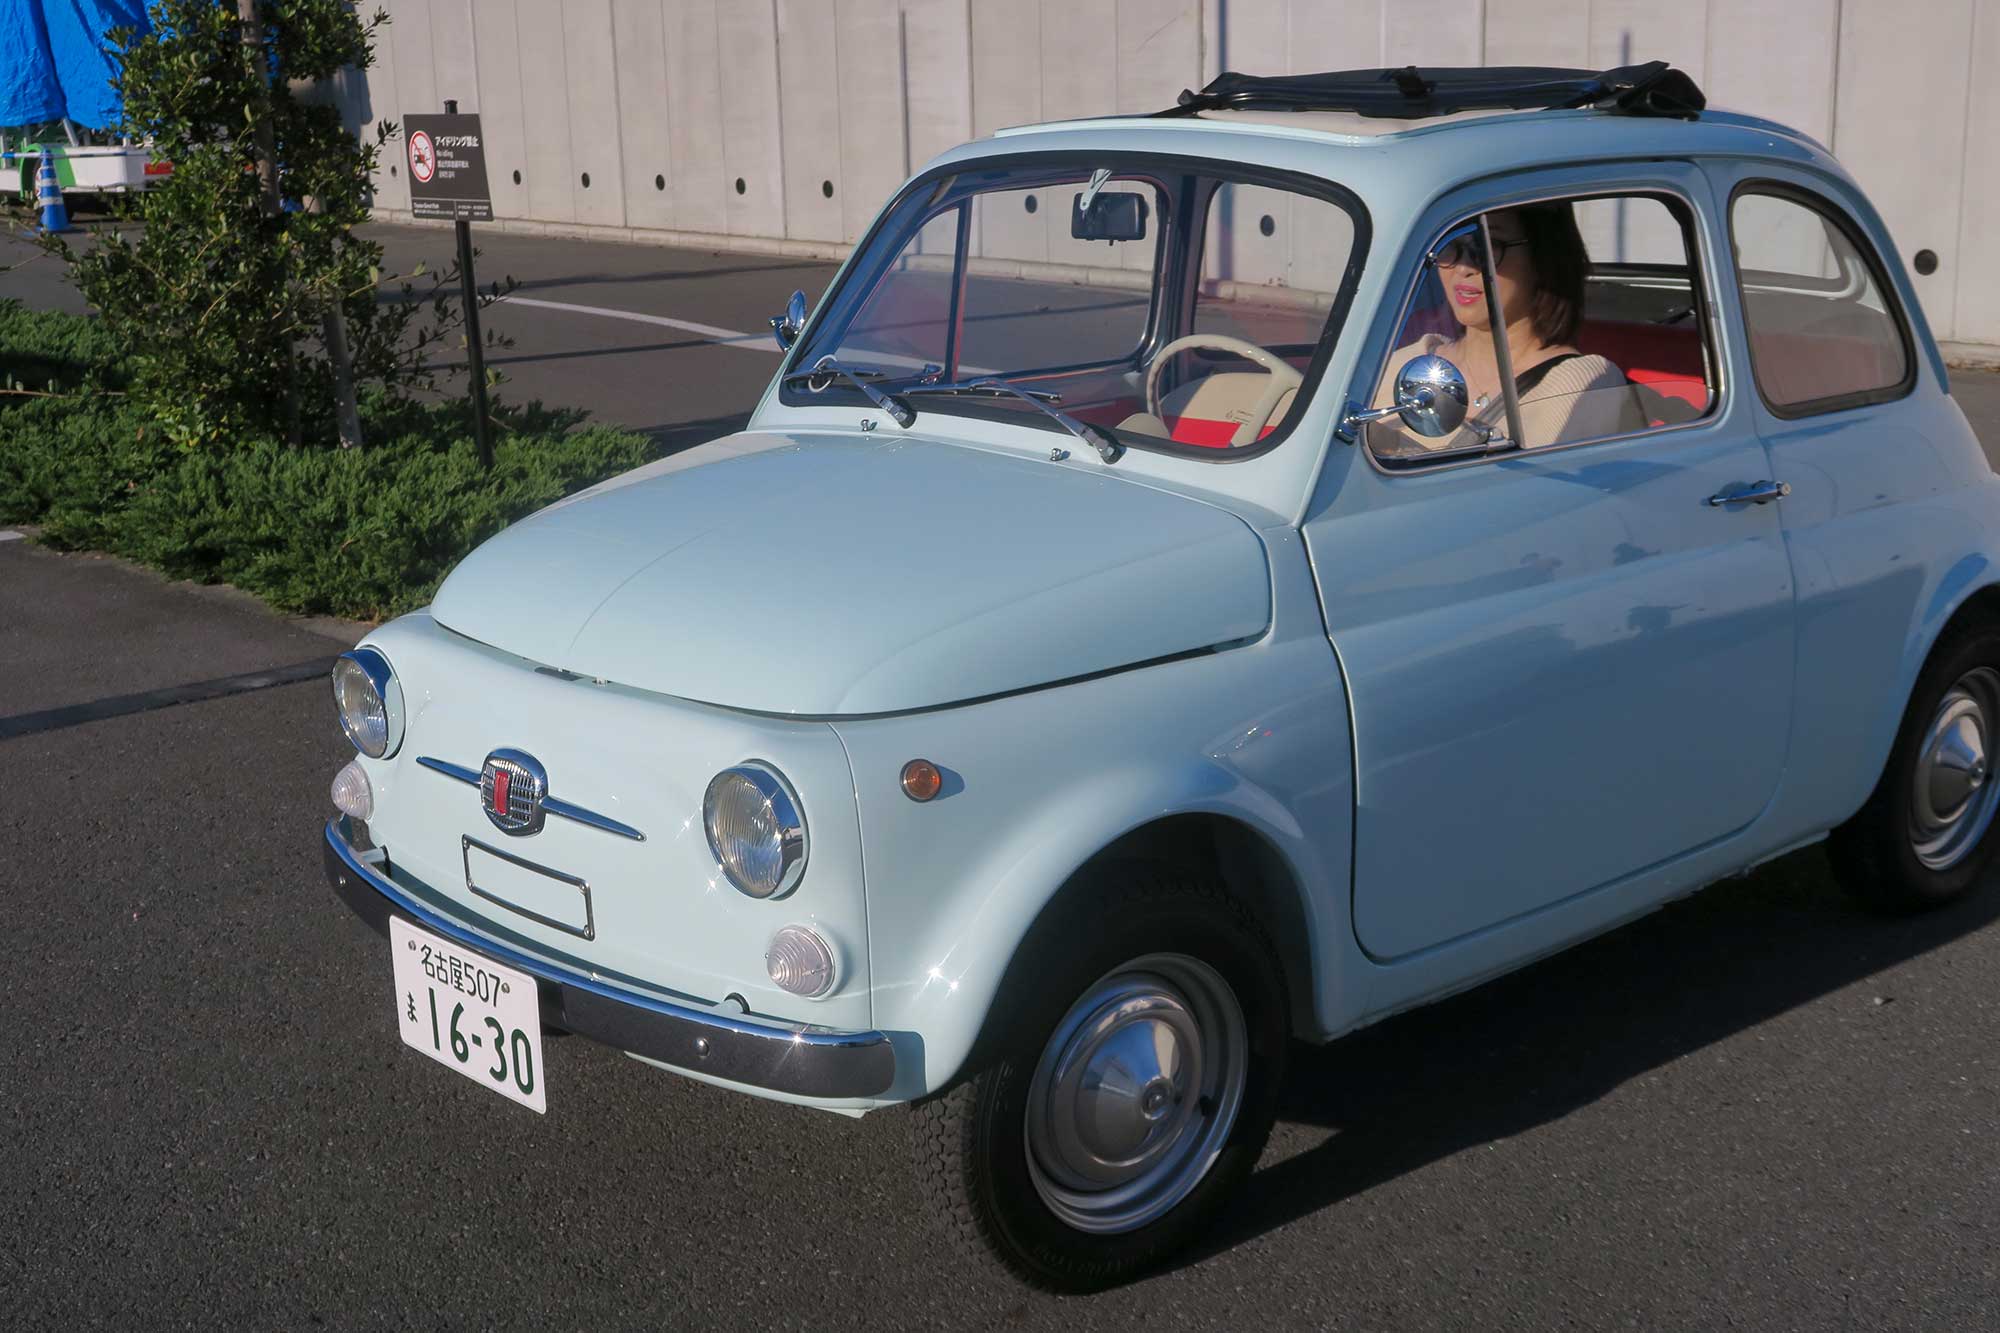 ルパンの愛車 旧型fiat500が ある日本人の愛で電気自動車として蘇る 吉田由美 Evsmartブログ